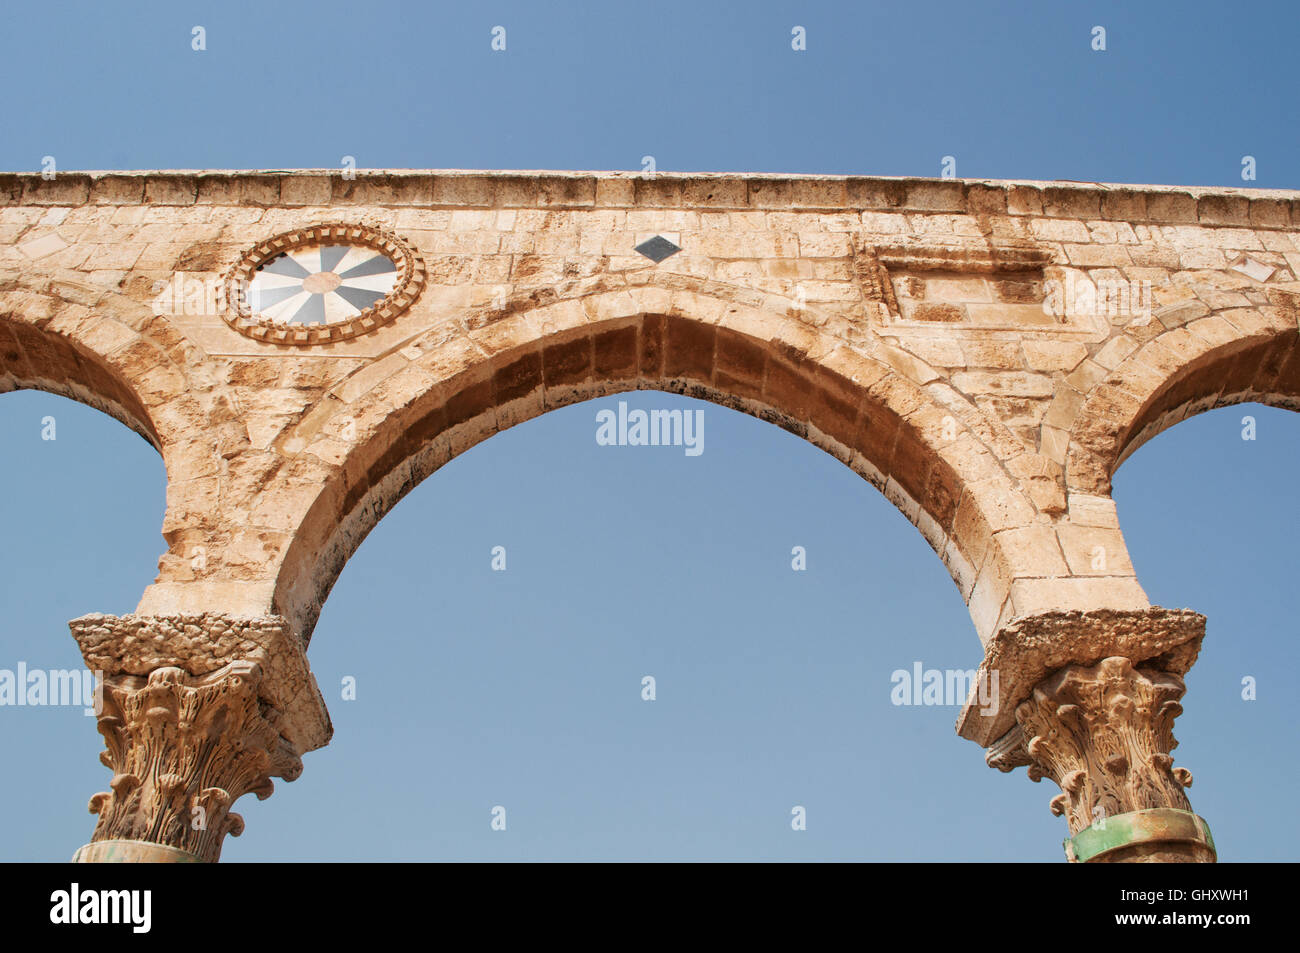 Gerusalemme: la causeway con archi sul Monte del Tempio (noto ai musulmani come l'Haram esh-Sharif), uno dei più importanti siti religiosi in tutto il mondo Foto Stock